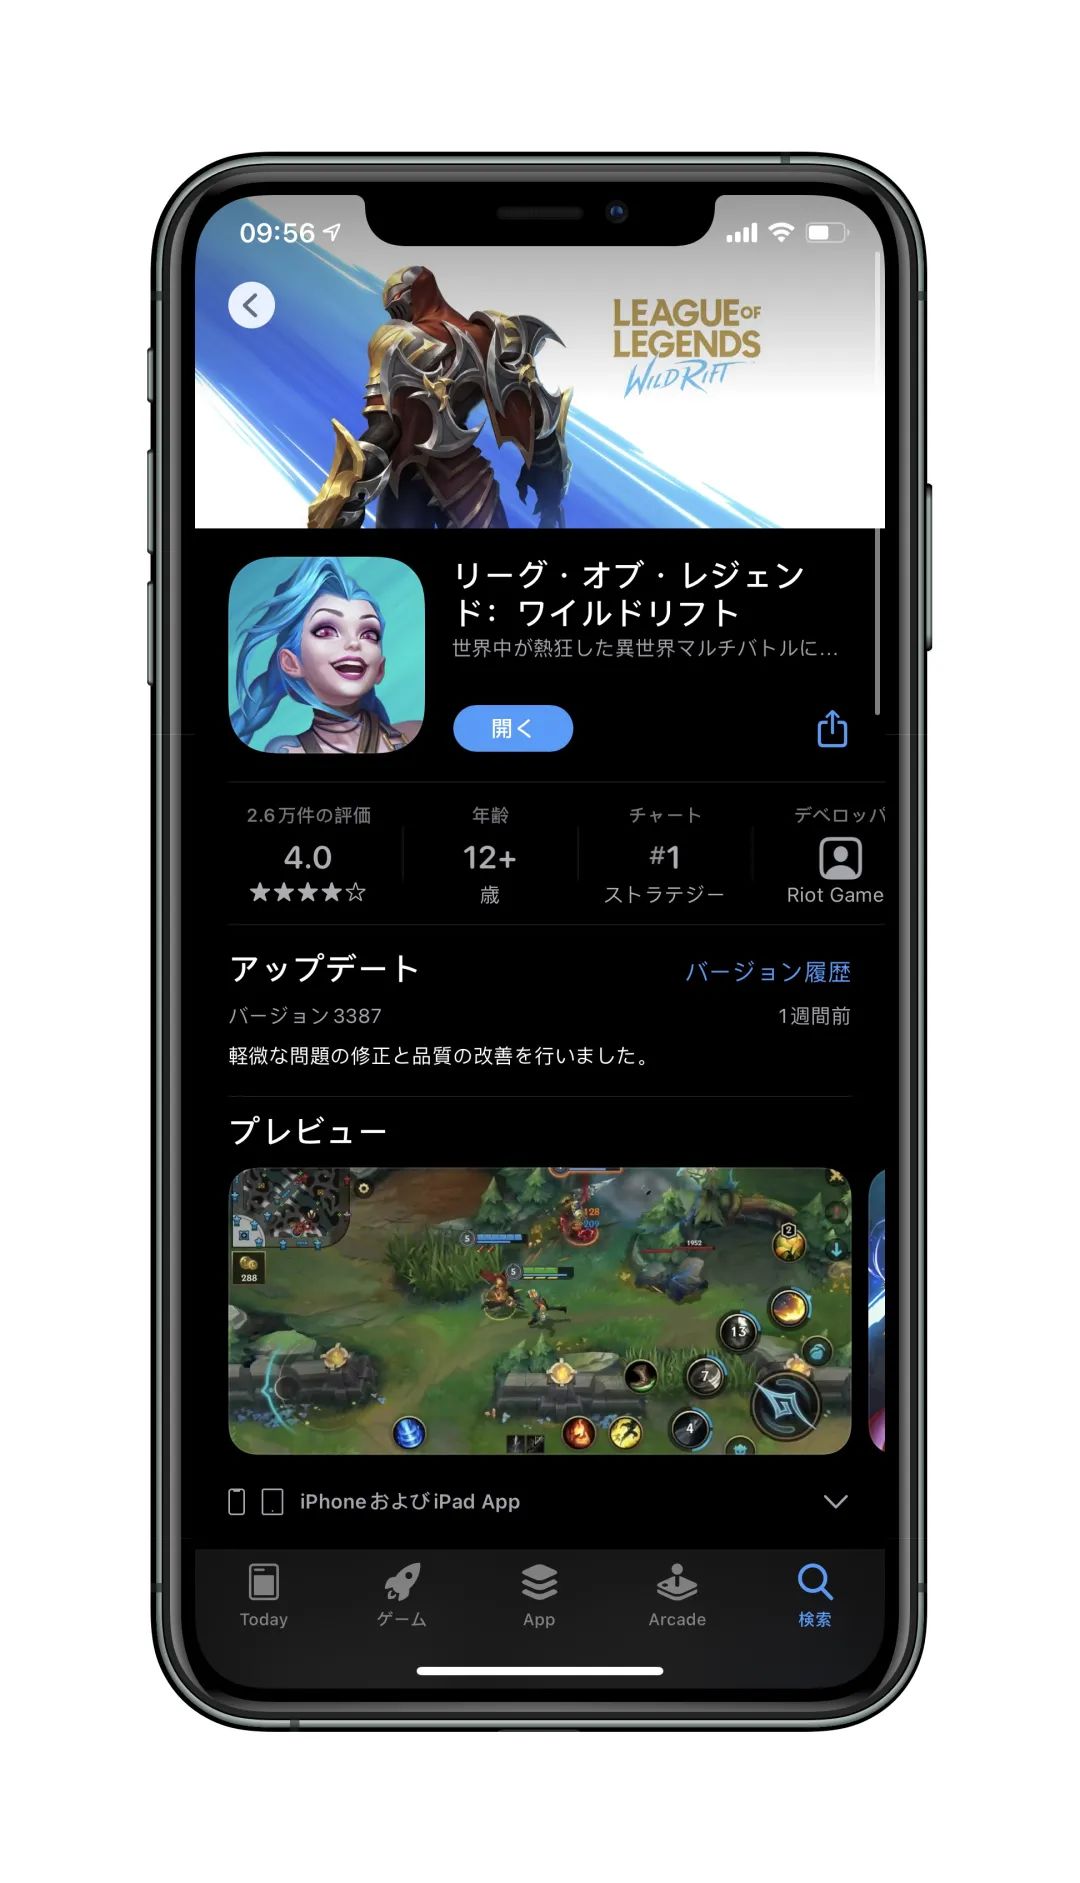 日本地区apple id信息填写_如何更改apple id的地区_apple id更改地区免卡